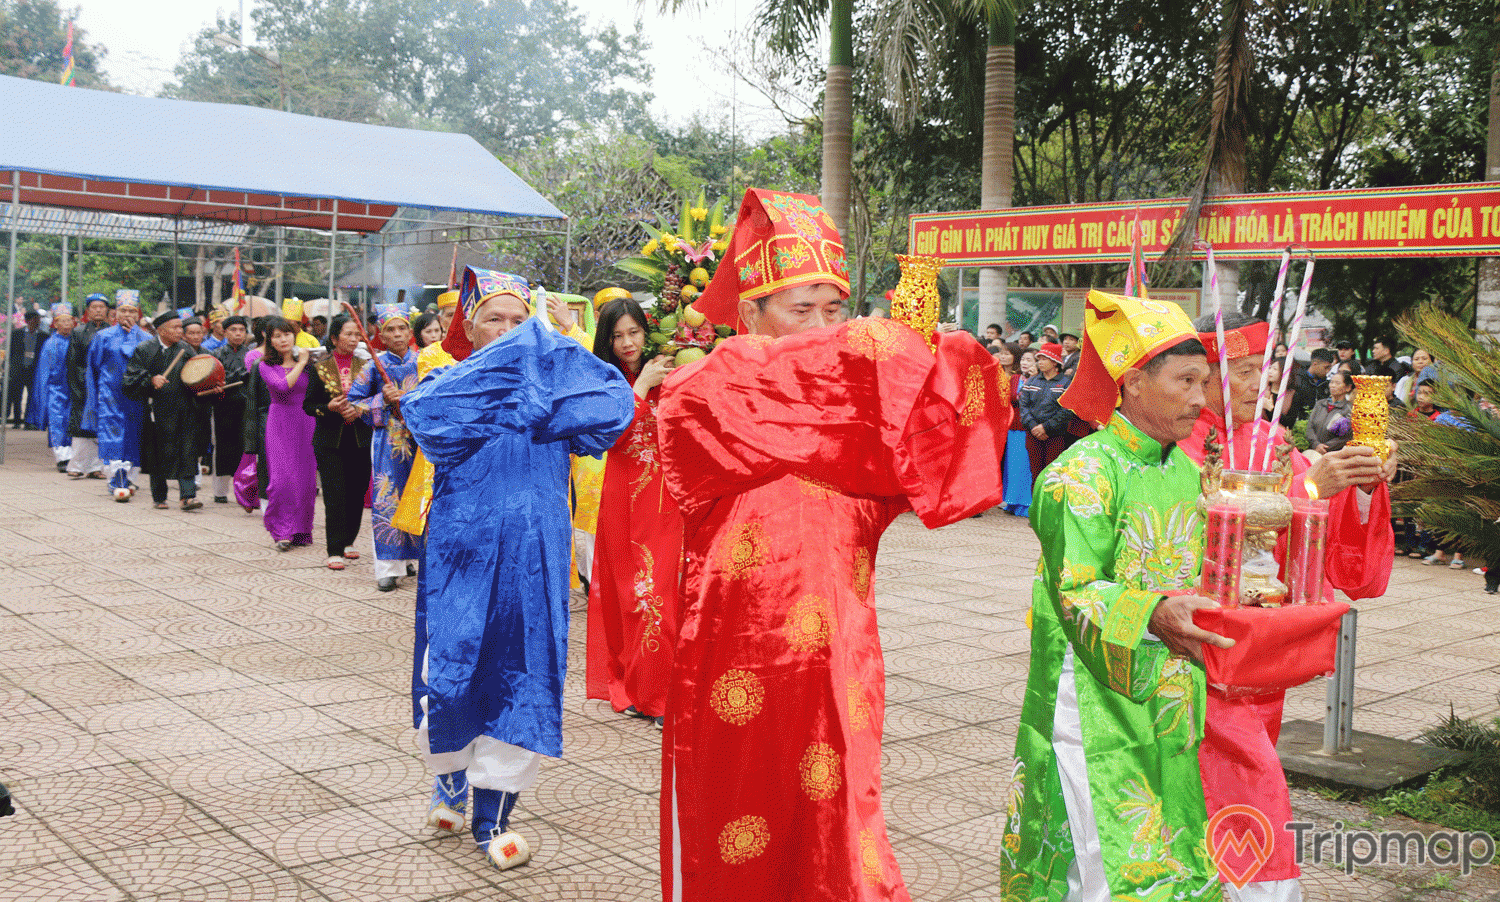 Lễ hội đền Quả Sơn được diễn ra hàng năm